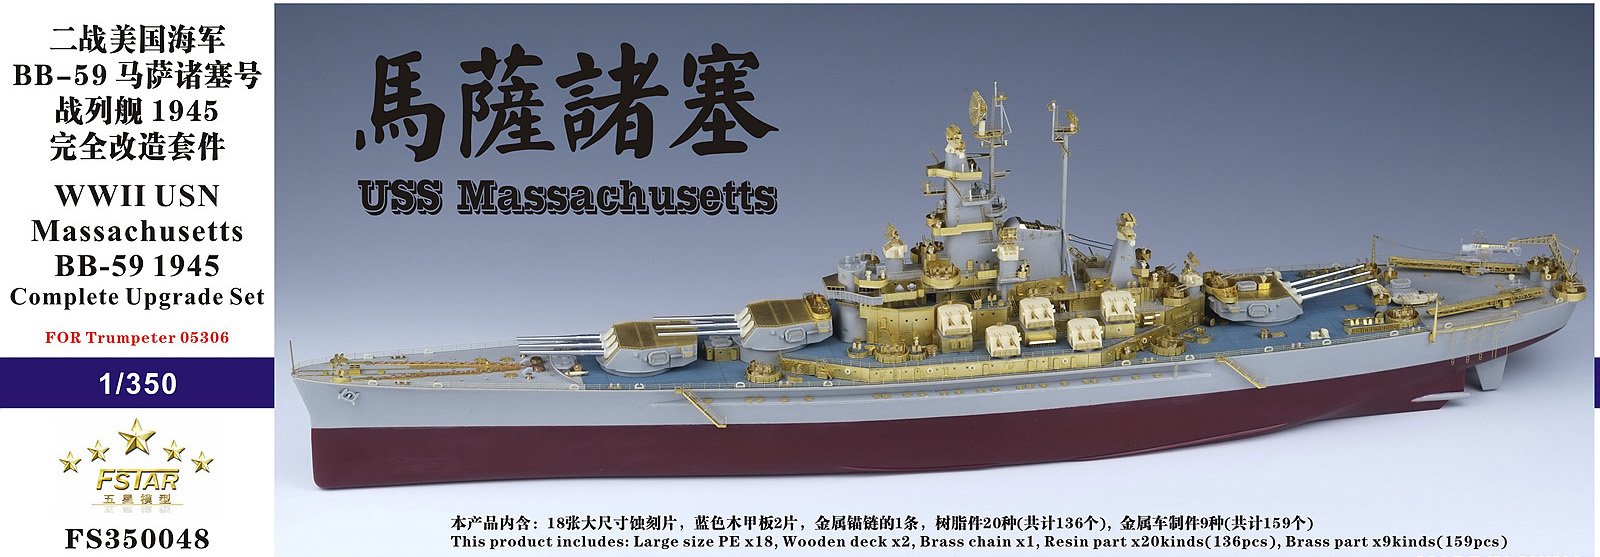 ファイブスター新製品「戦艦 BB-59 マサチューセッツ 1945 コンプリートアップディテールセット」入荷しました。